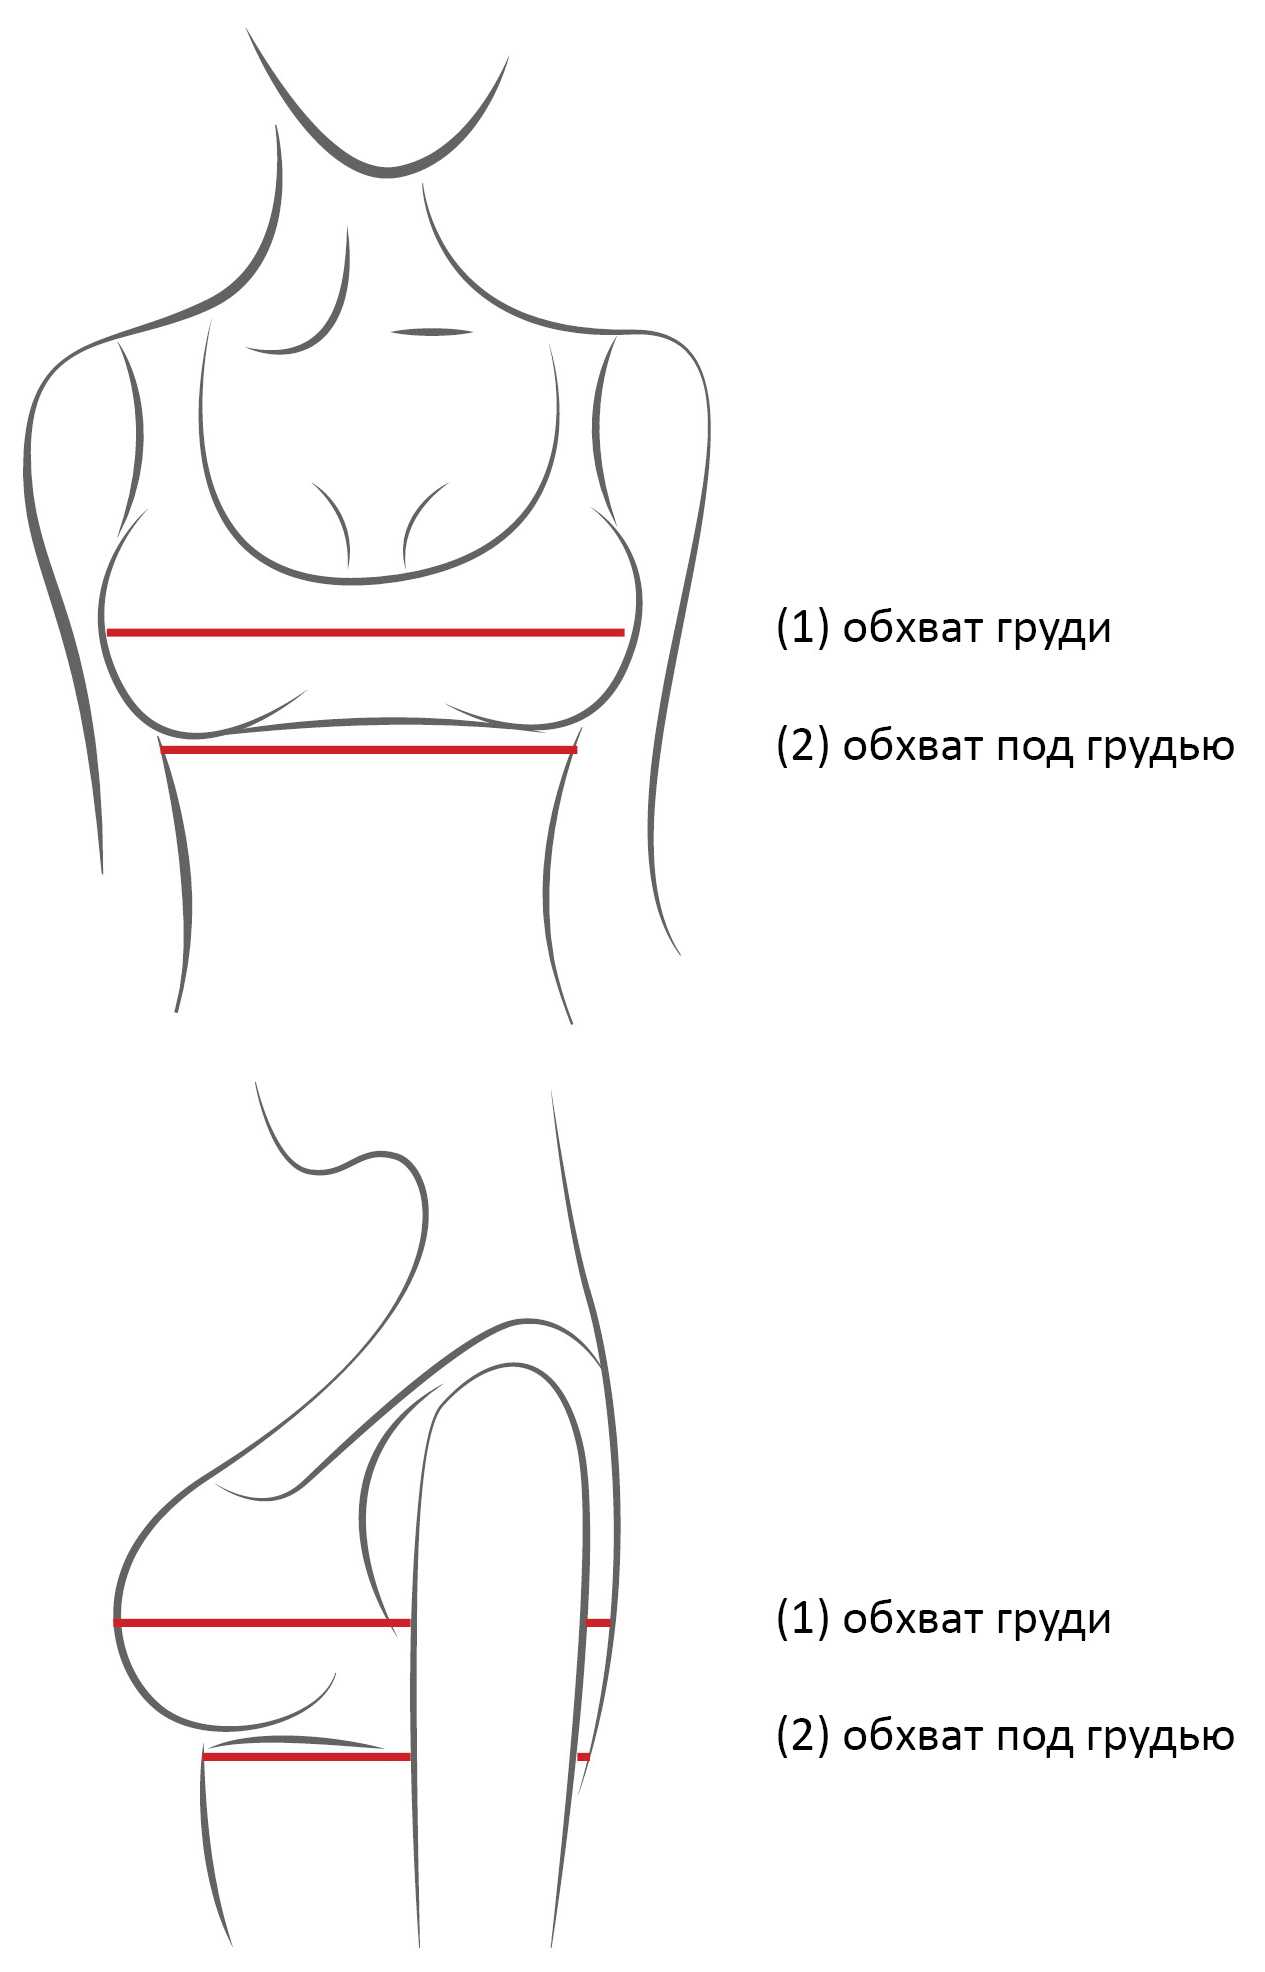 как правильно измерить объем груди у женщин фото 10